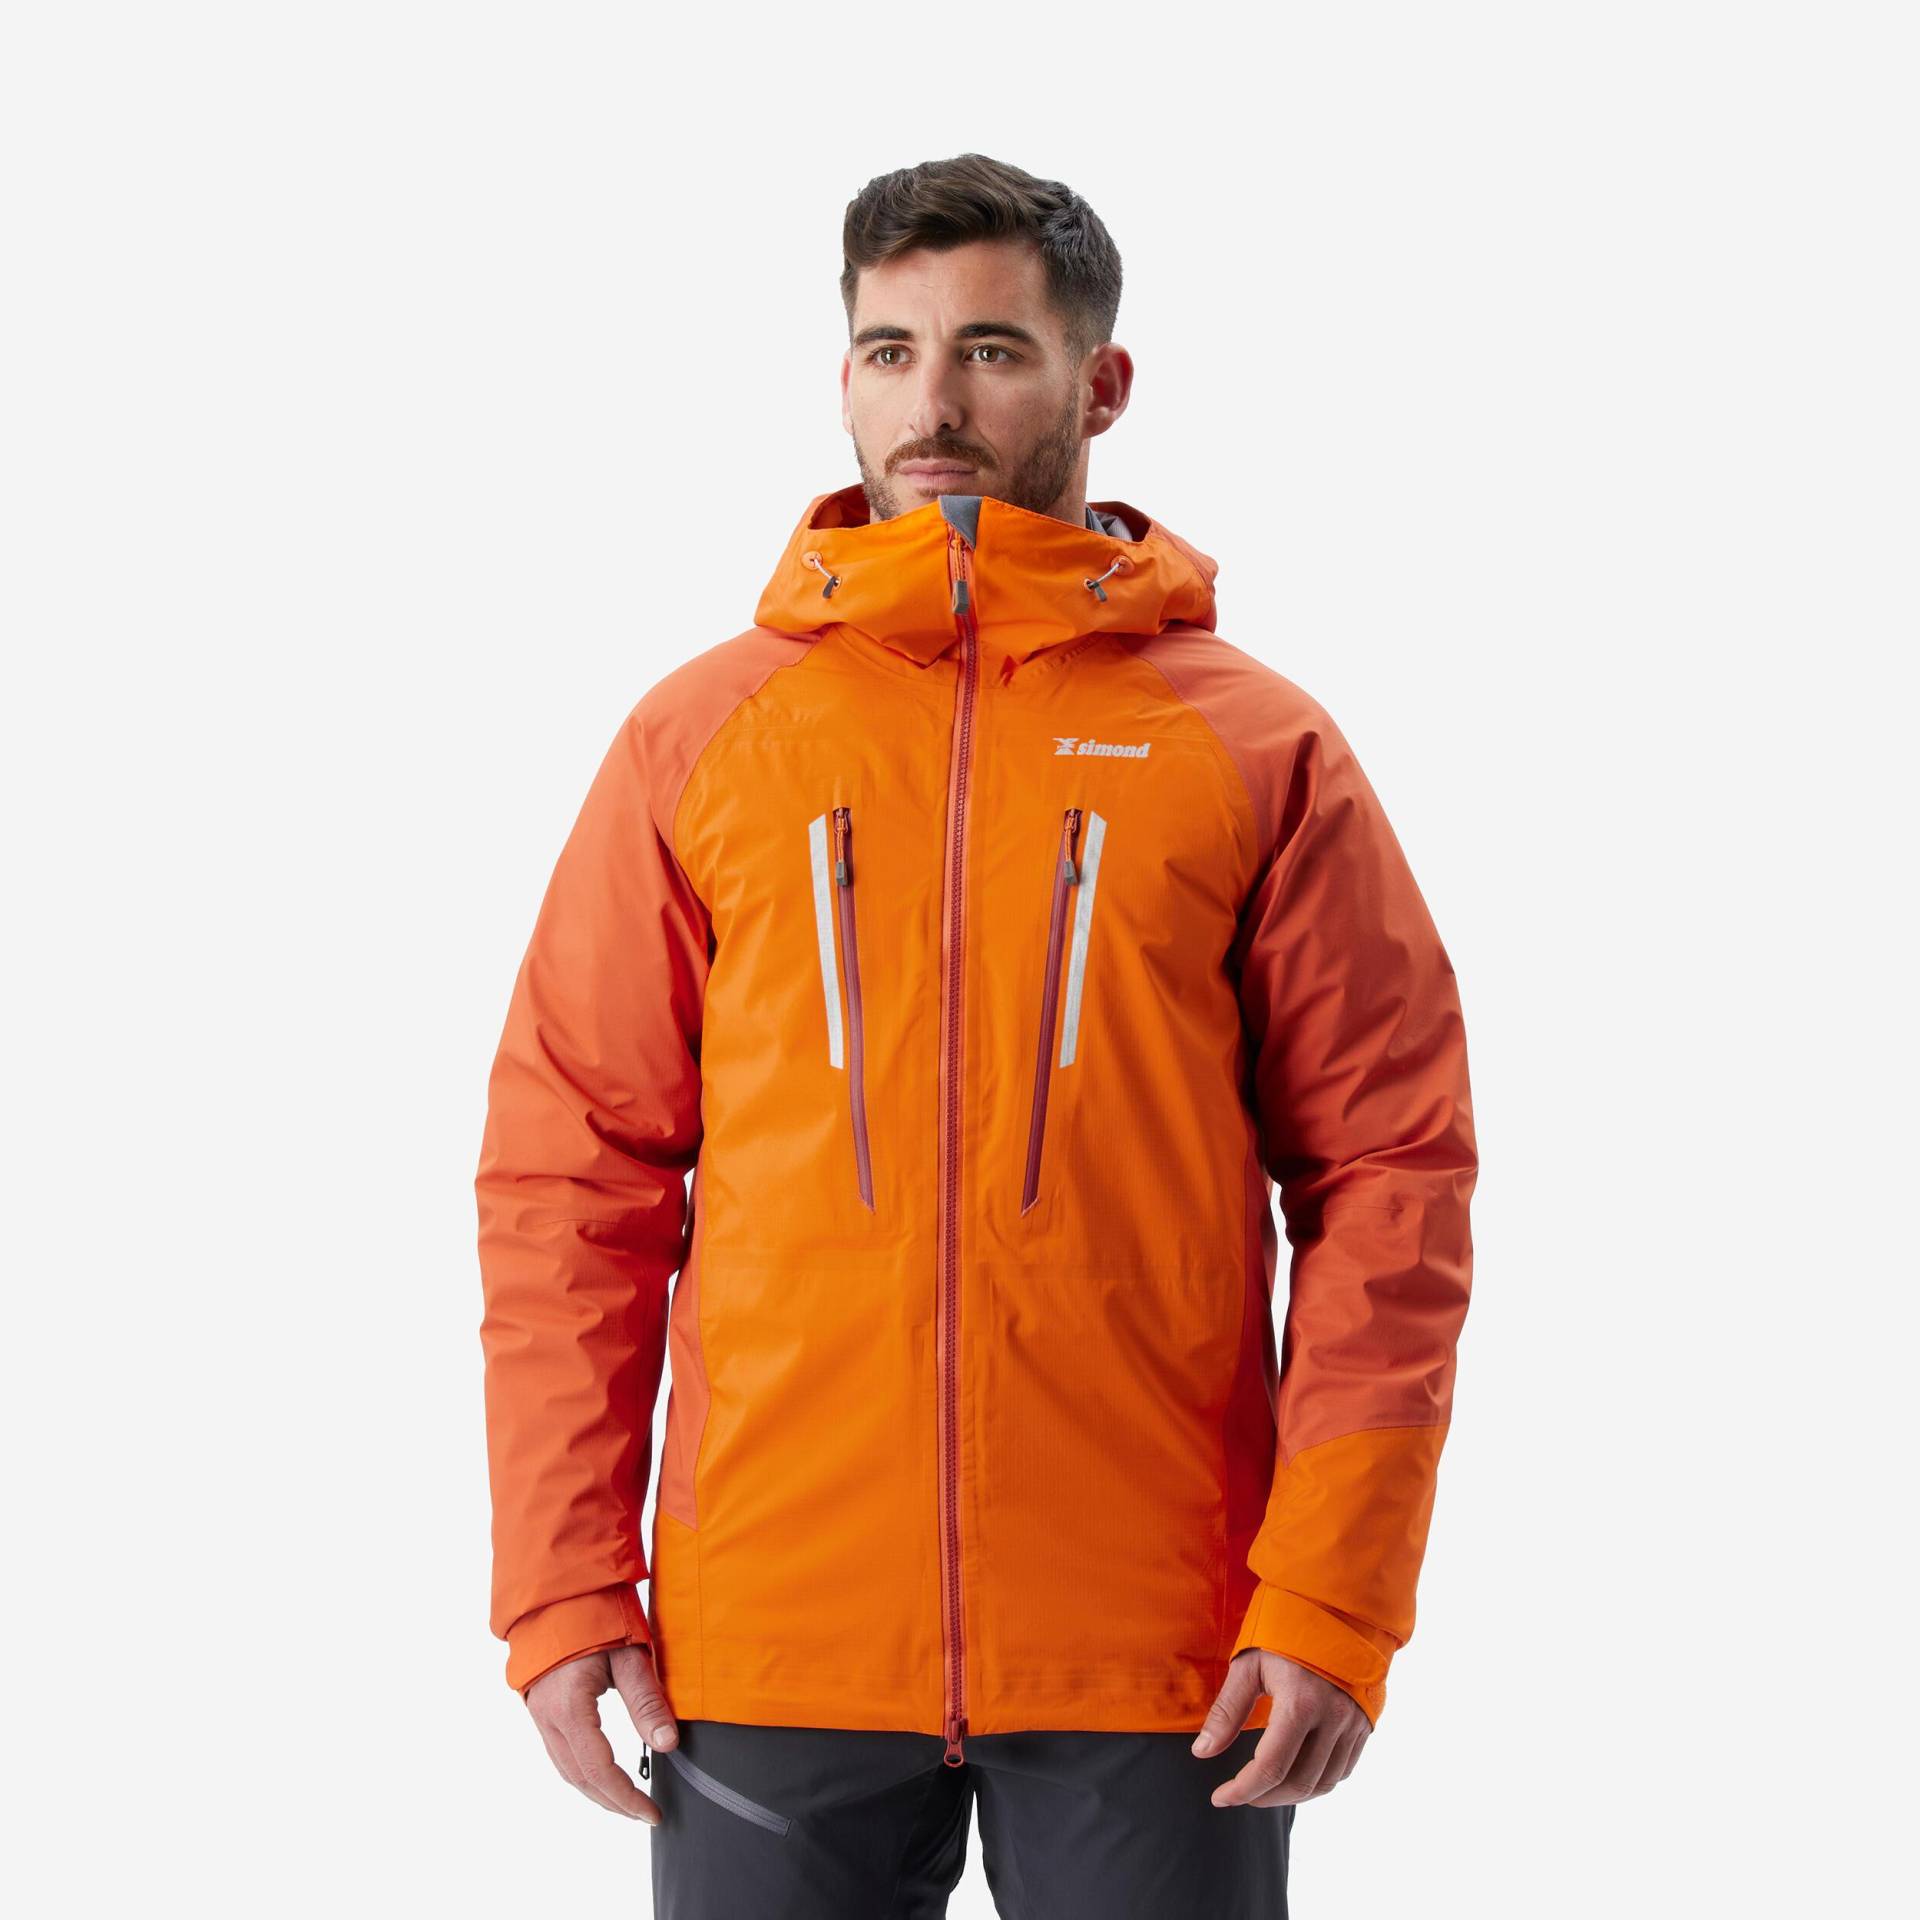 Jacke - Alpinism Light Herren Apricot 52/2XL von SIMOND